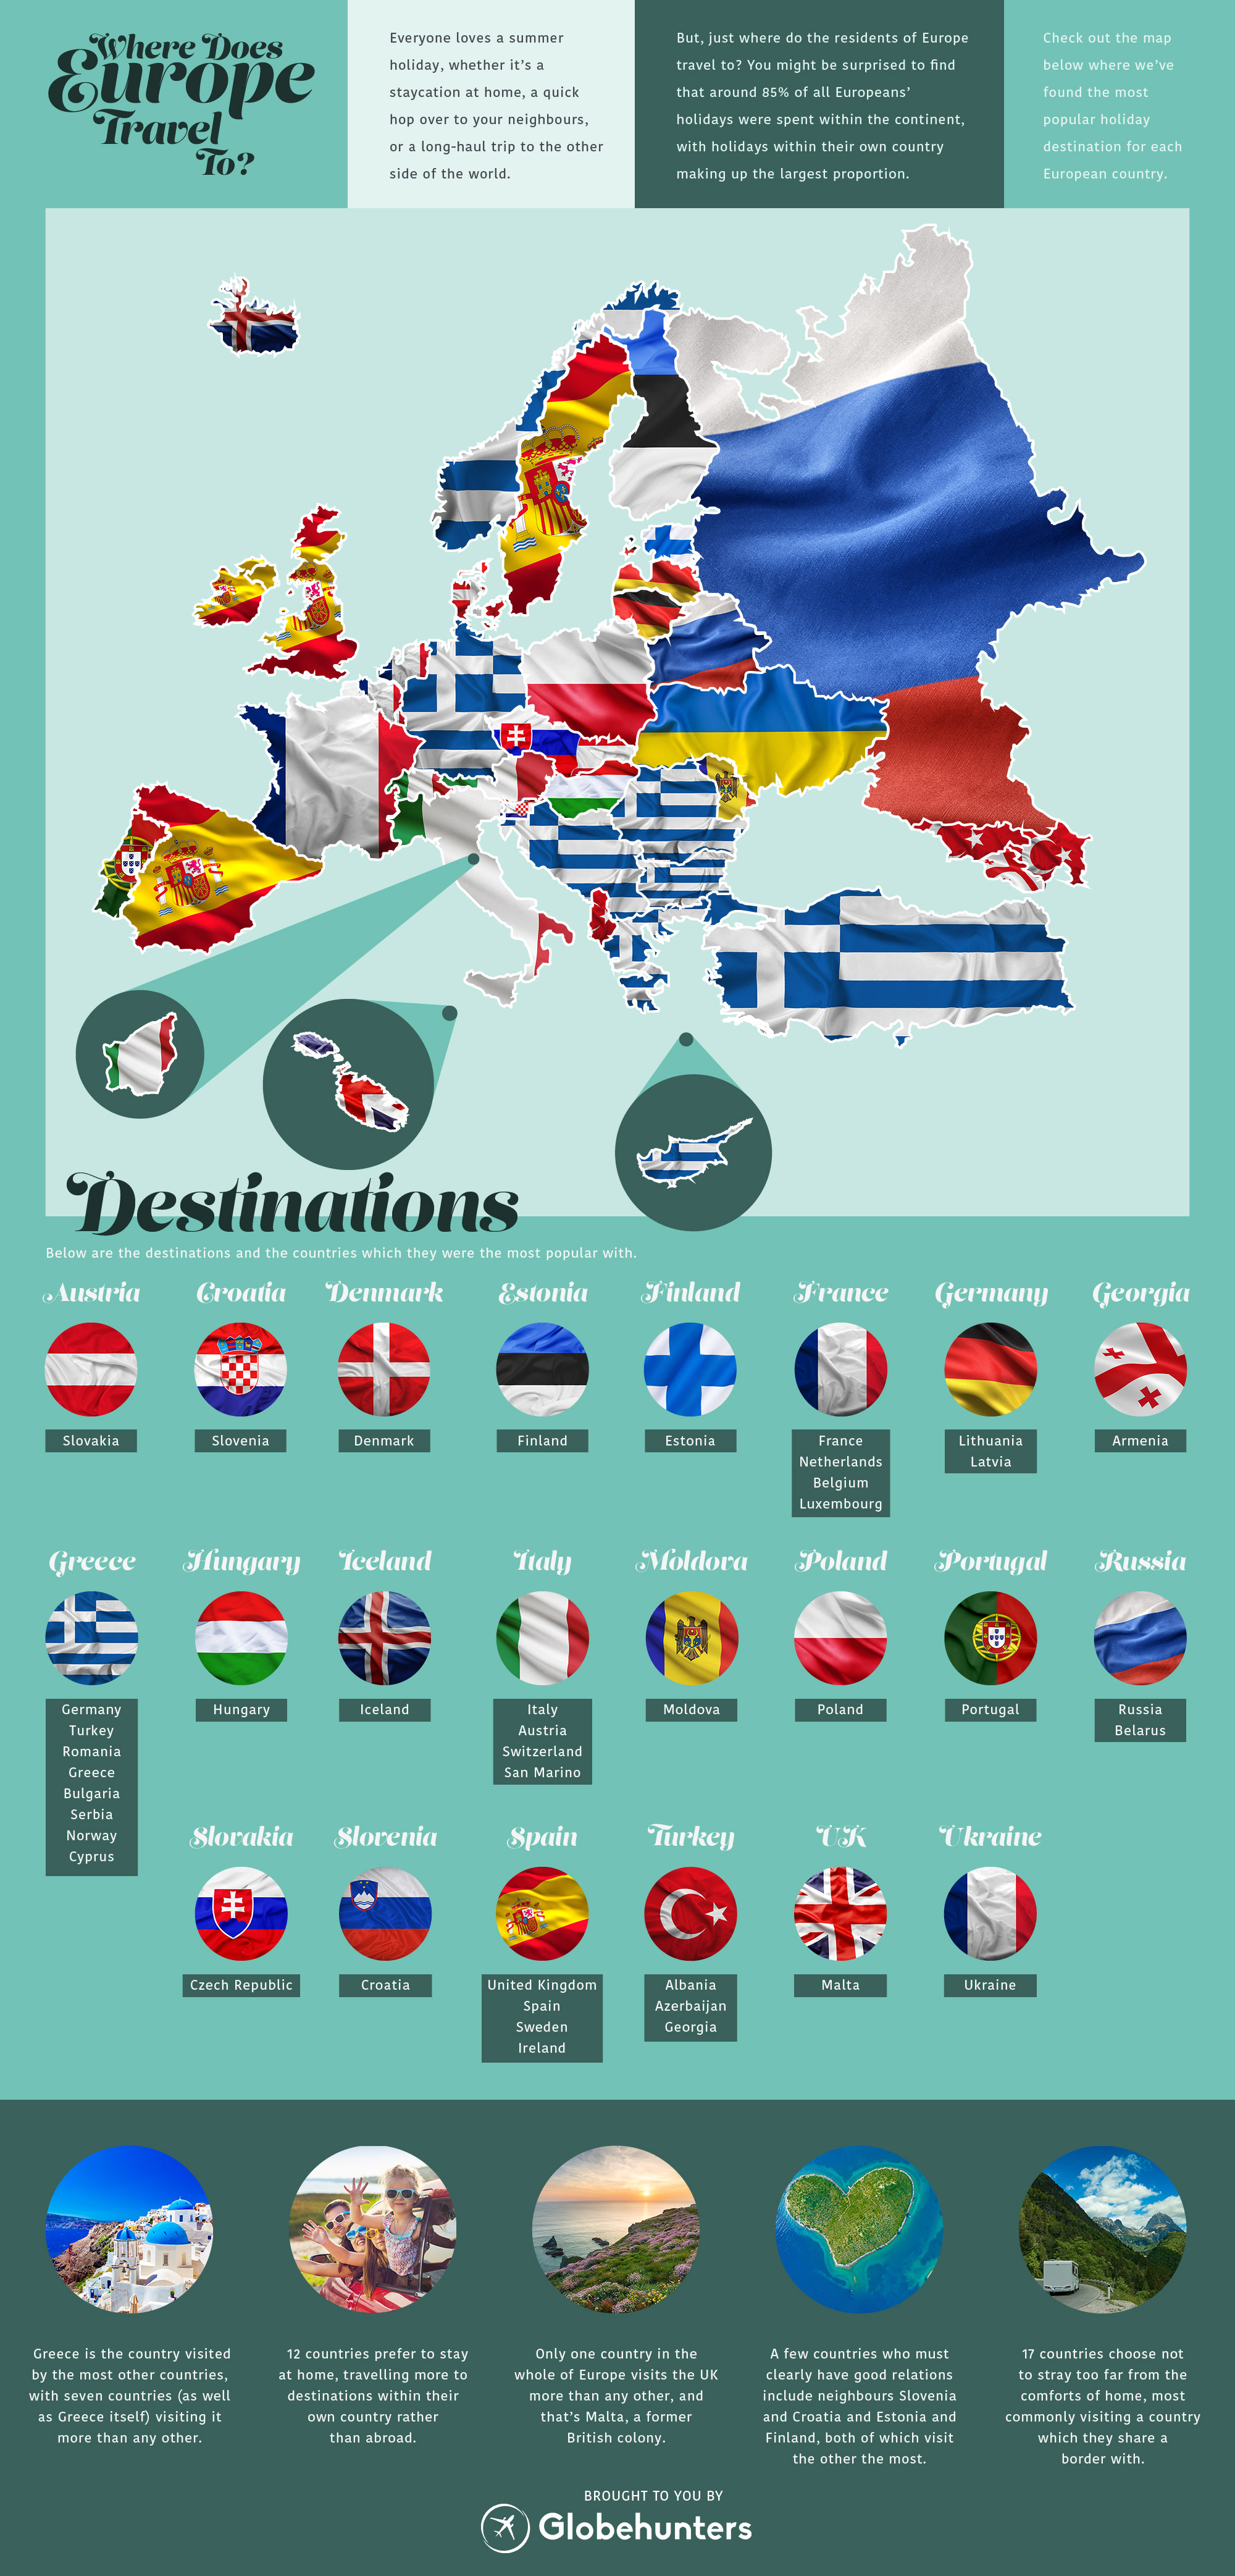 european countries tourism ranking